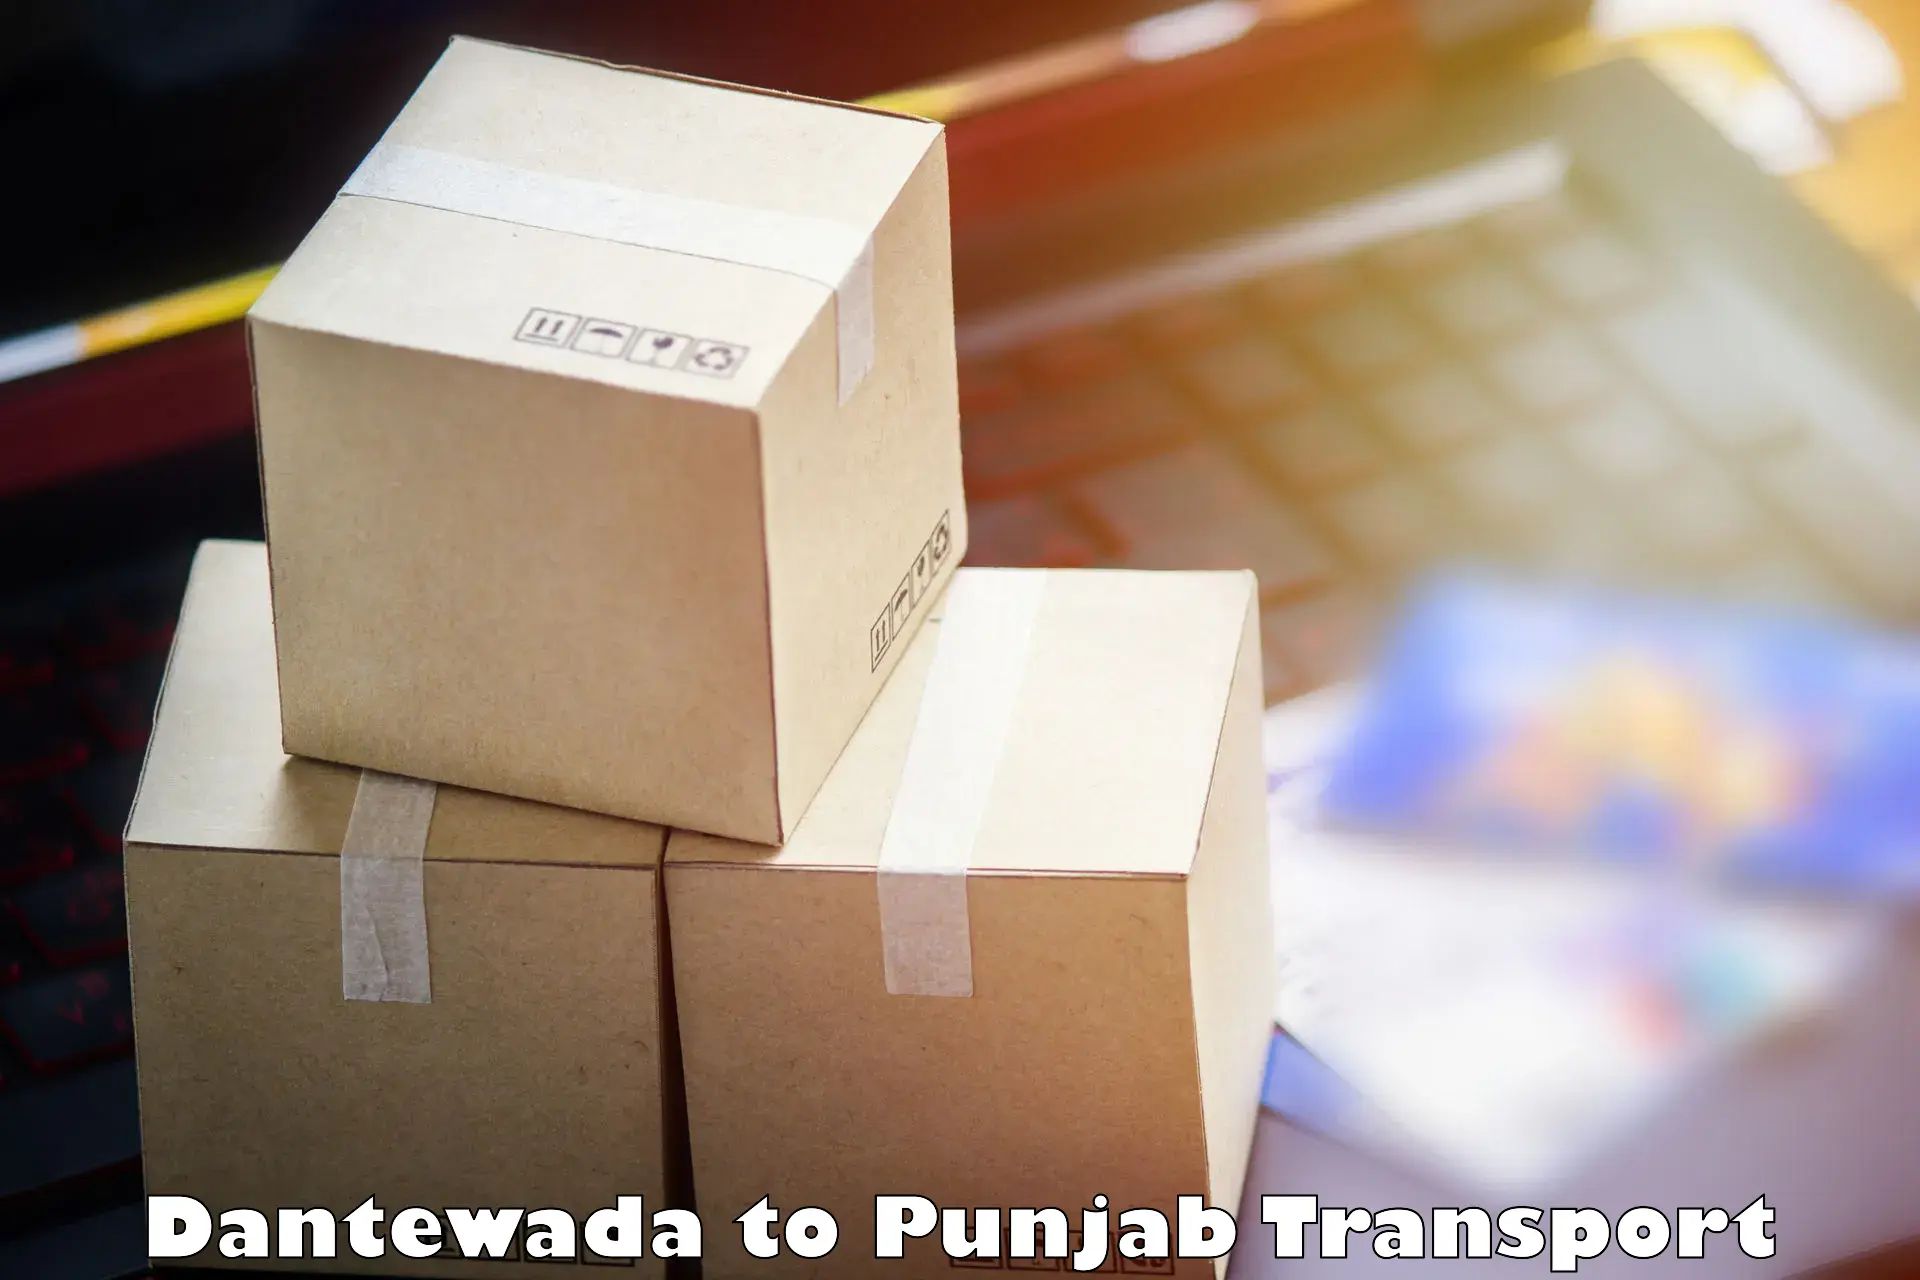 Road transport online services Dantewada to Sirhind Fatehgarh